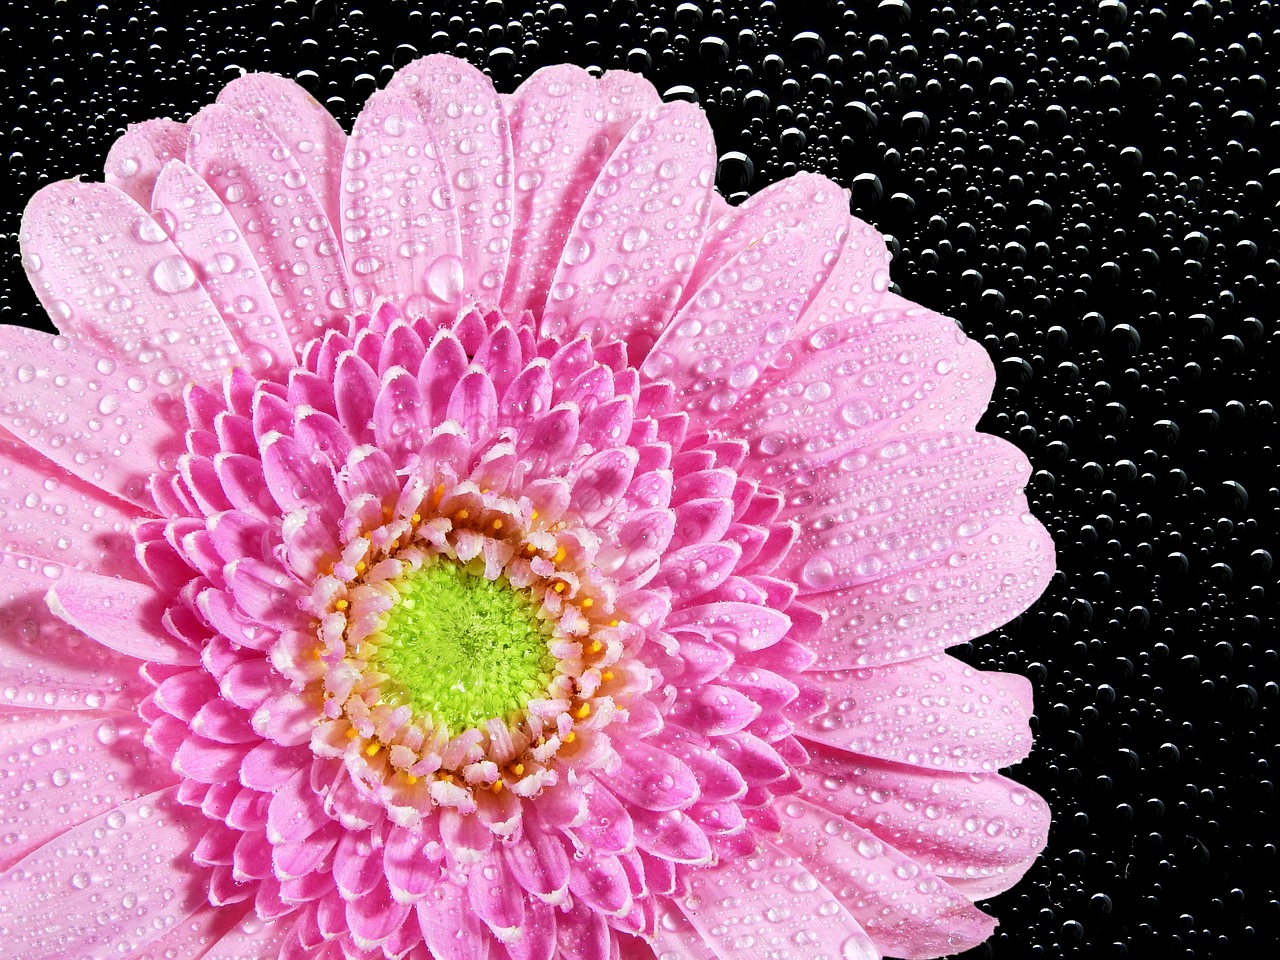 chrysanthemum flower nature free photo